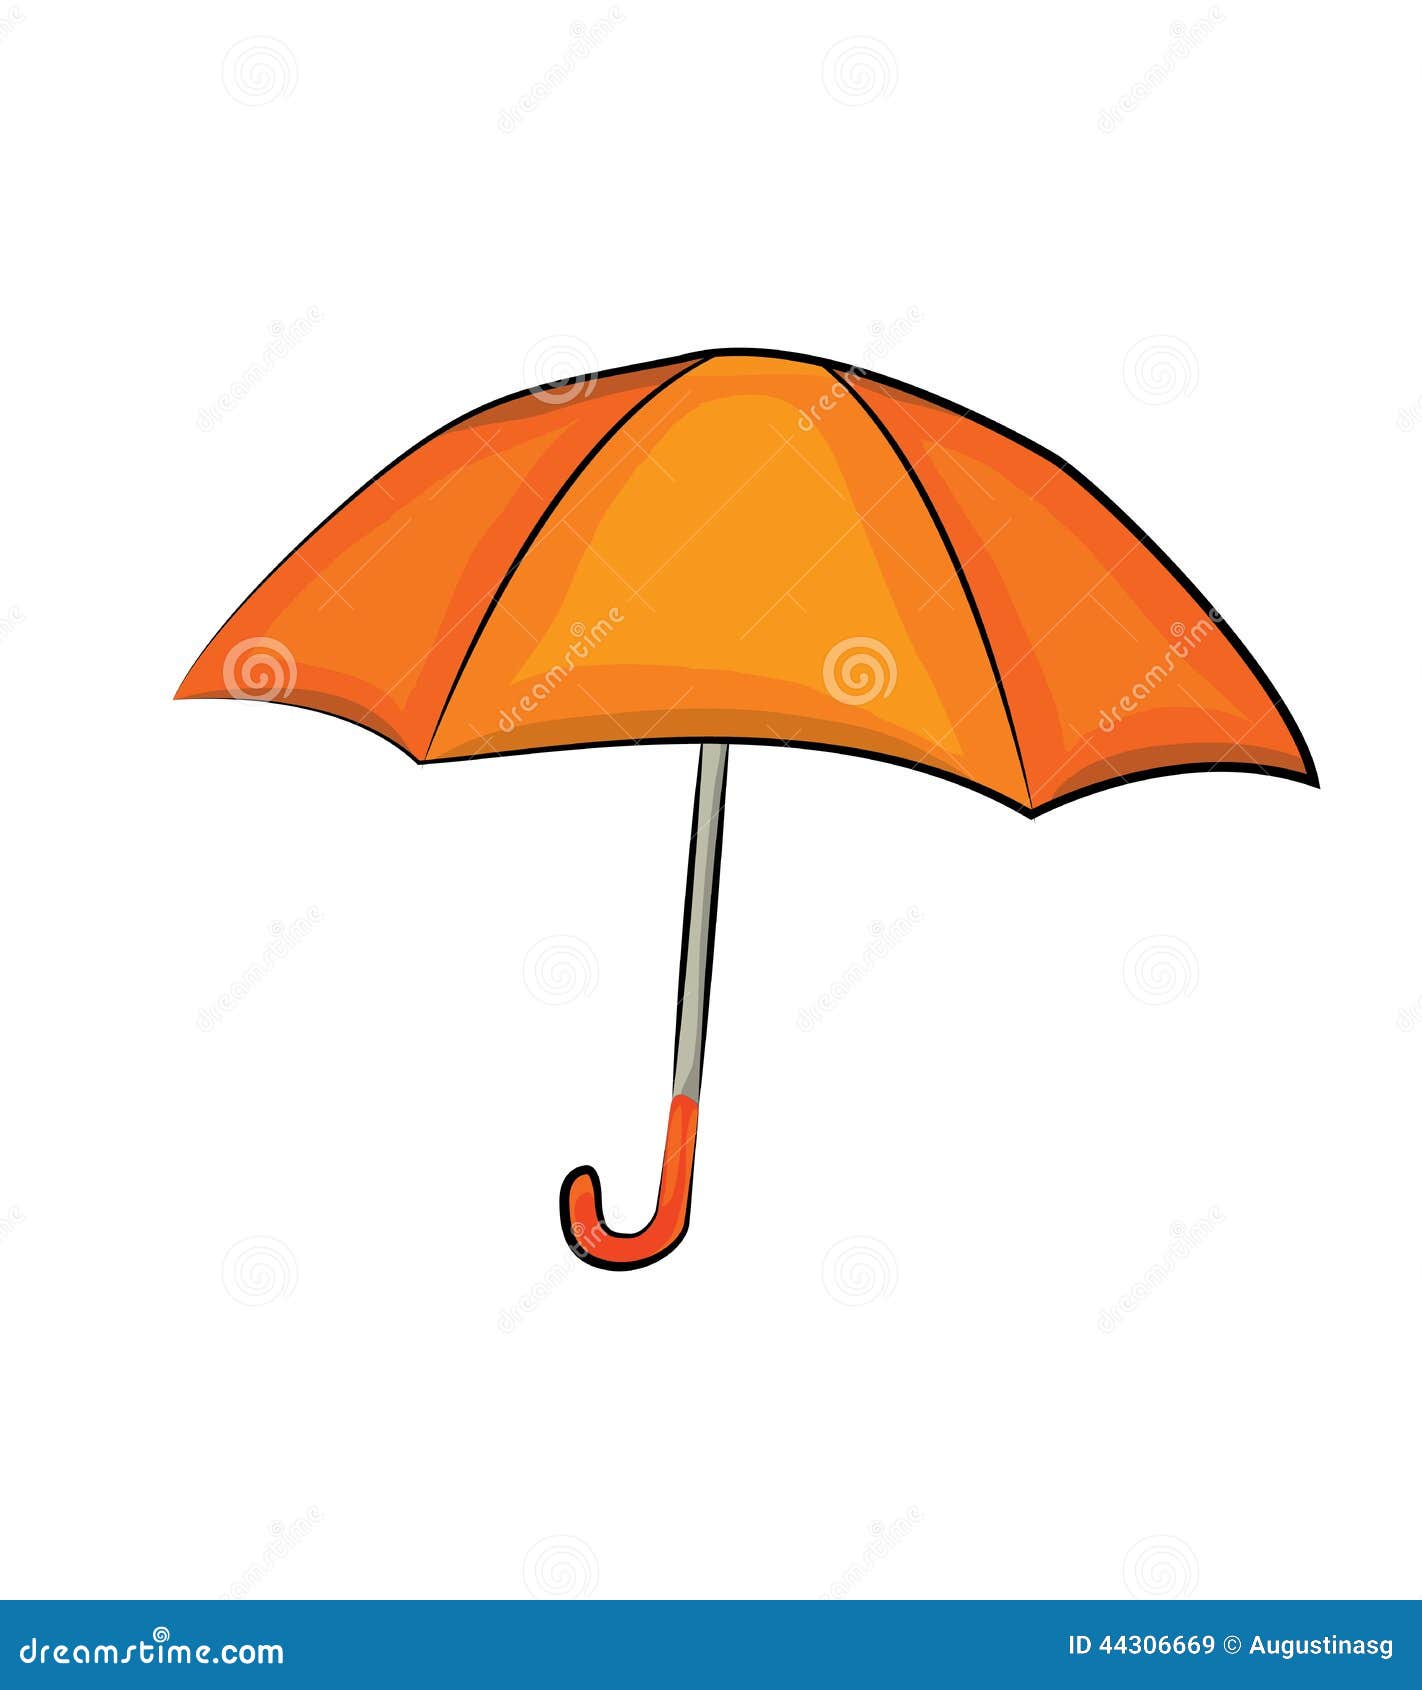 Free Download Caricature Umbrella Pics